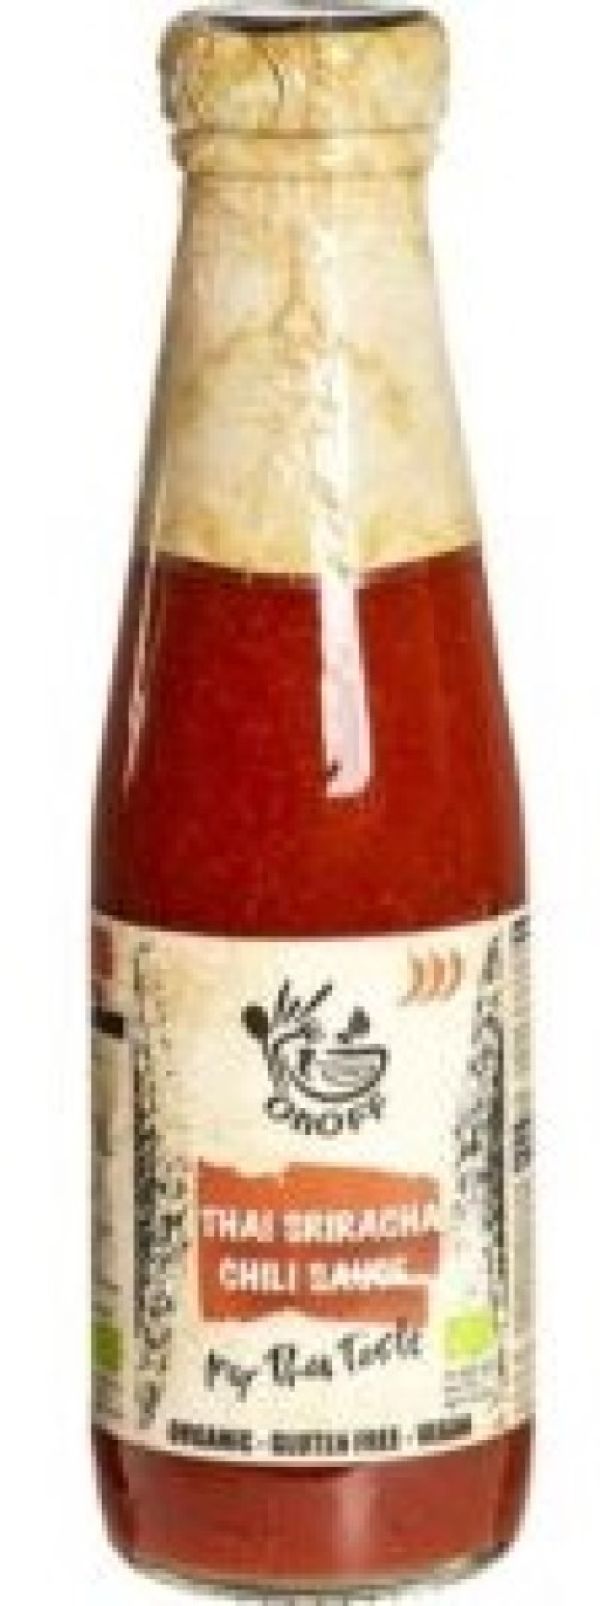 Thai Sriracha Chili Sauce